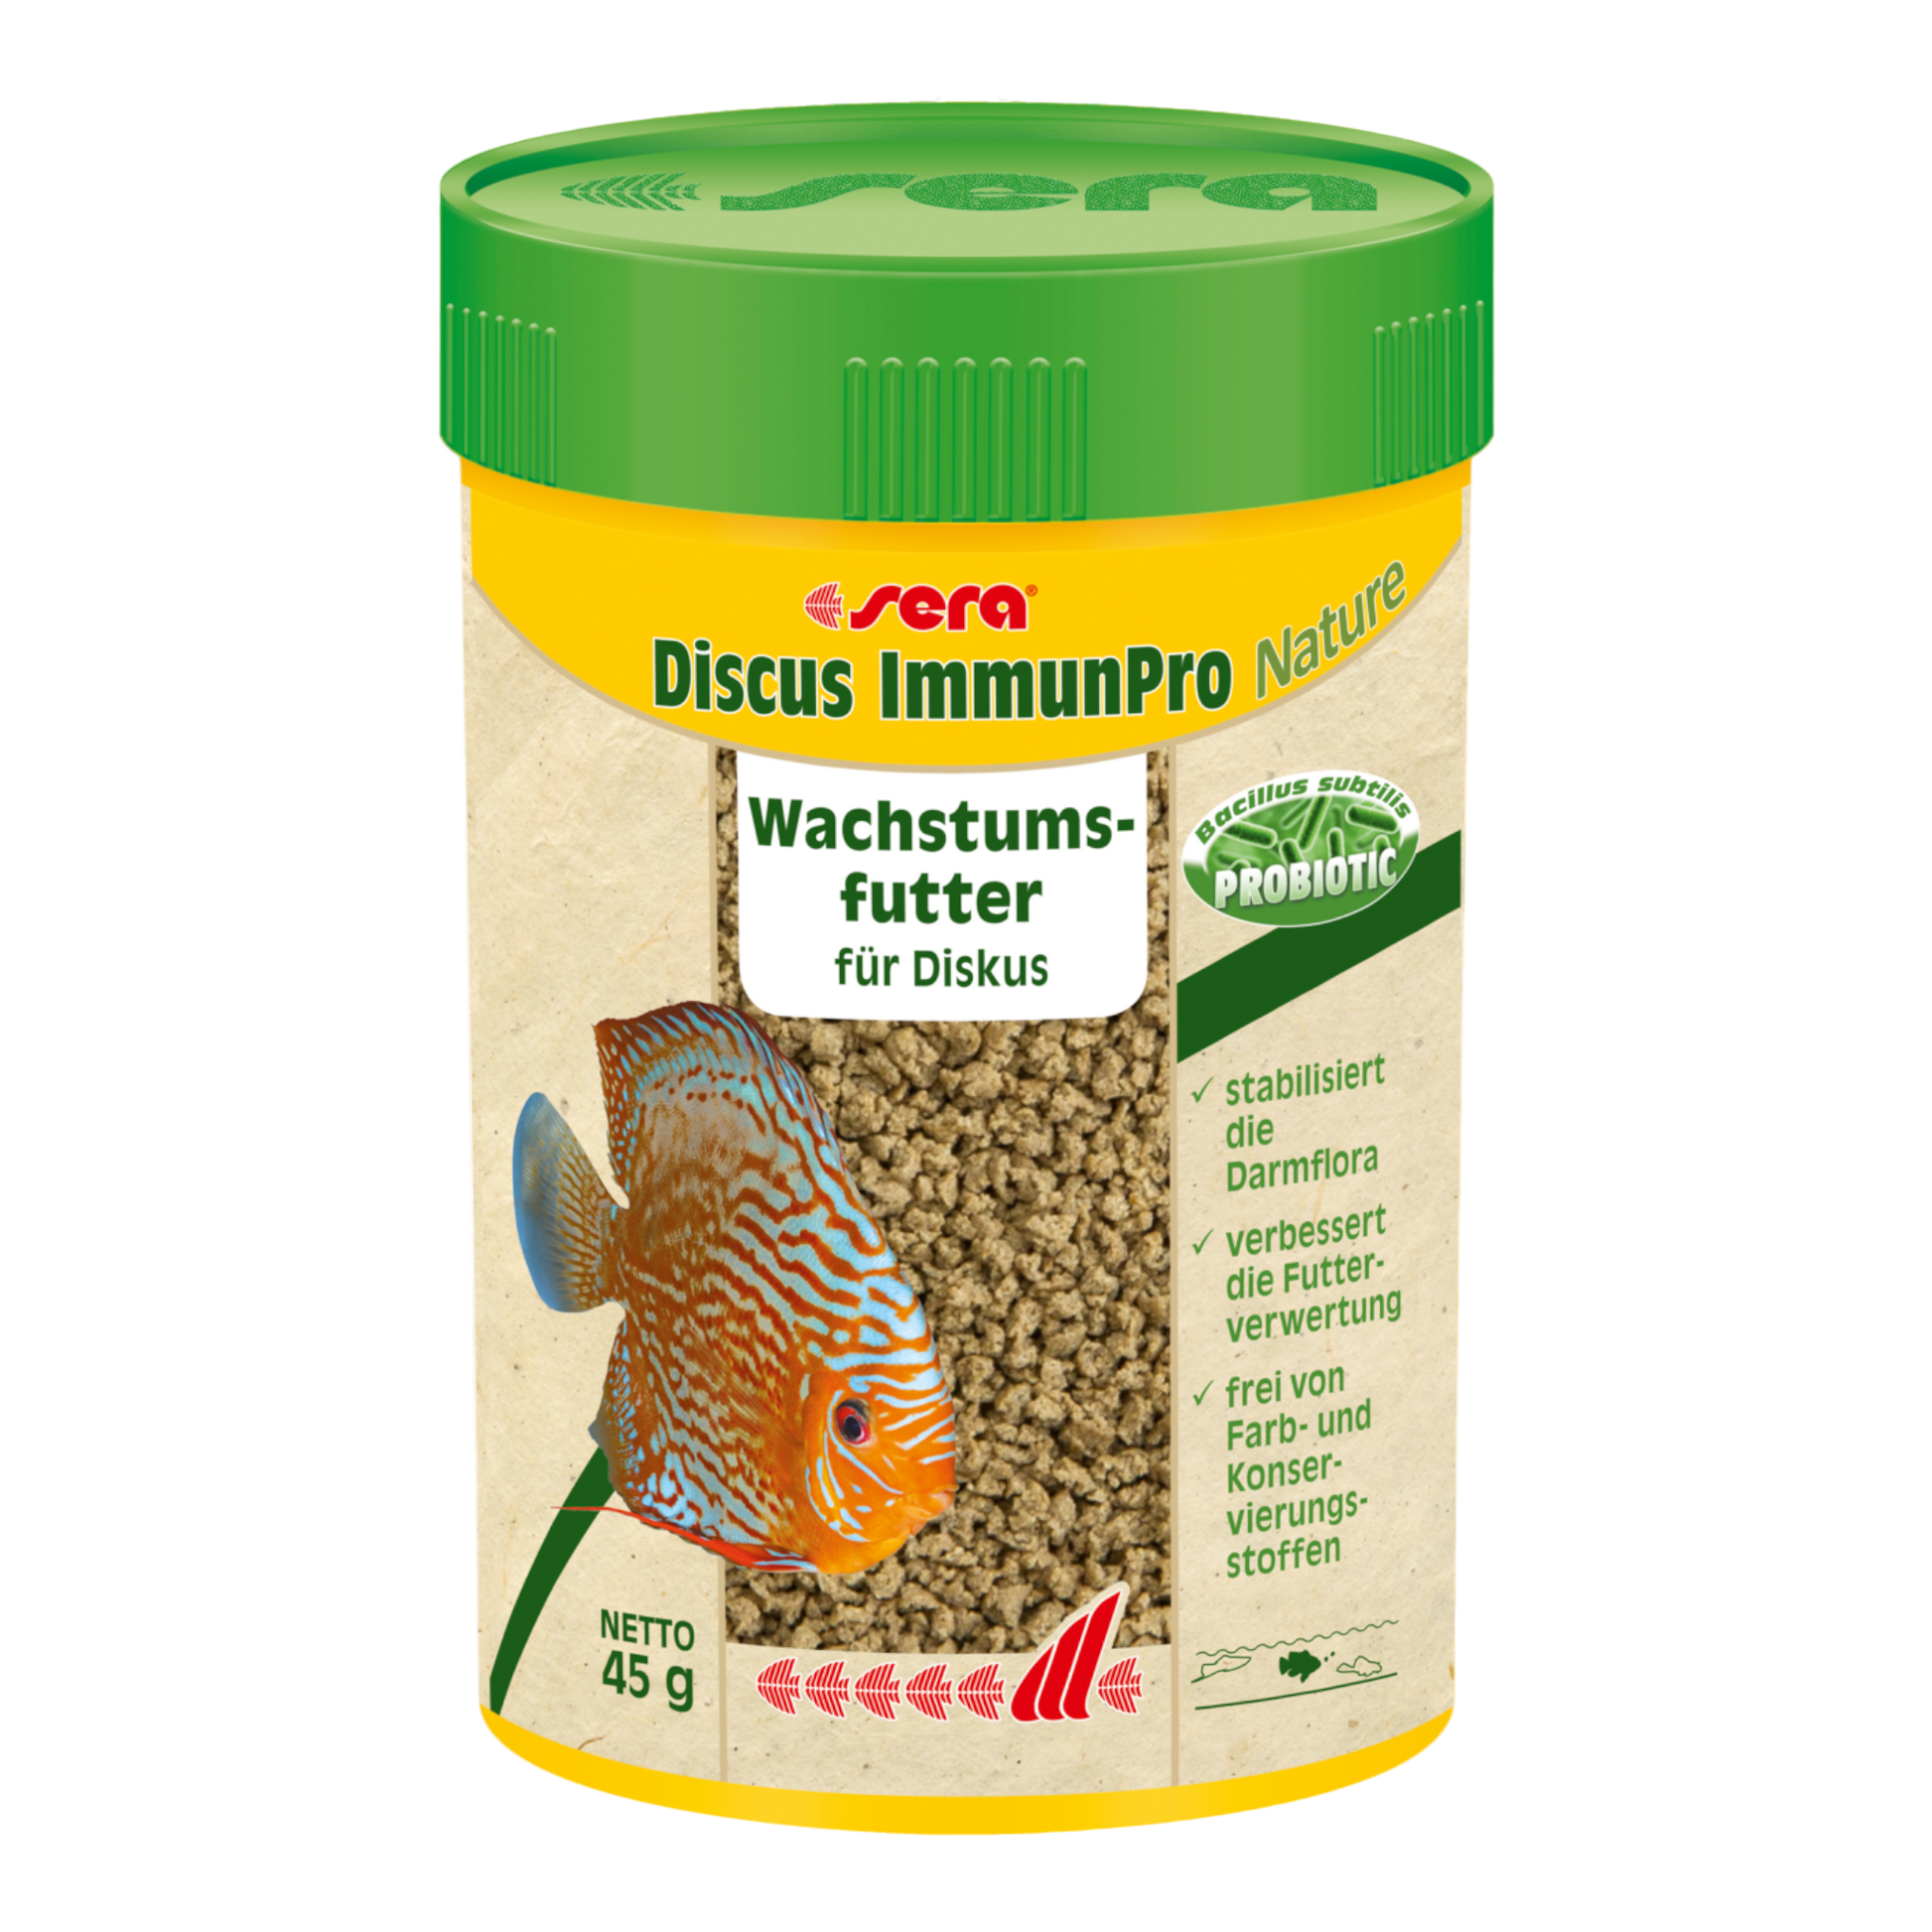 sera Diskus ImmunPro Nature ist das Wachstumsfutter ohne Farb- und Konservierungsstoffe aus Softgranulat für alle Diskusfische.